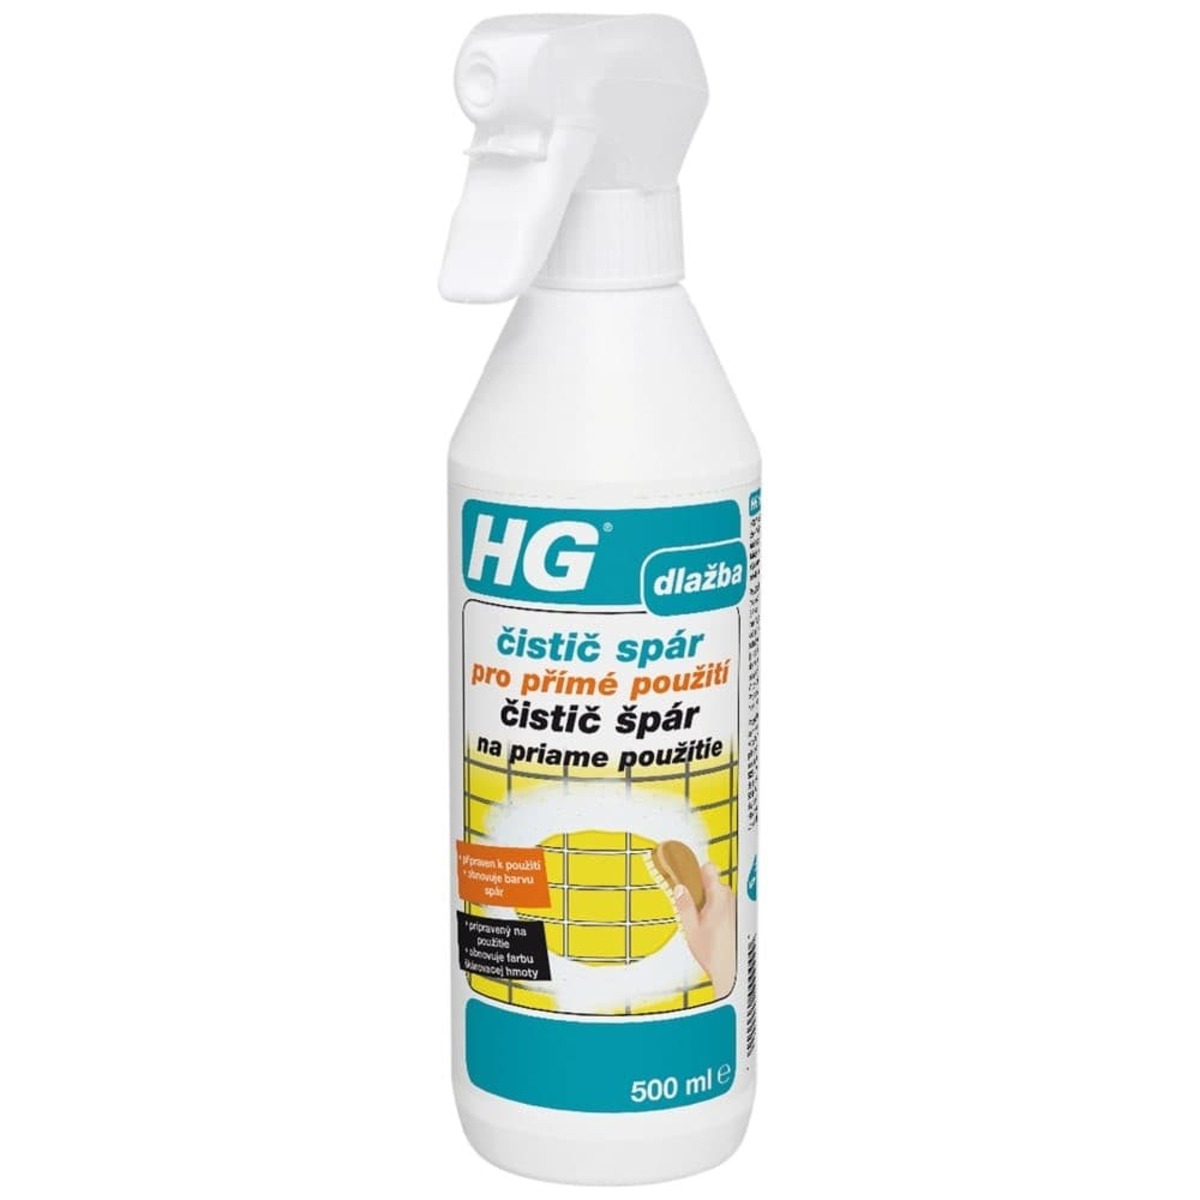 HG čistič spár pro přímé použití HGCSPP HG